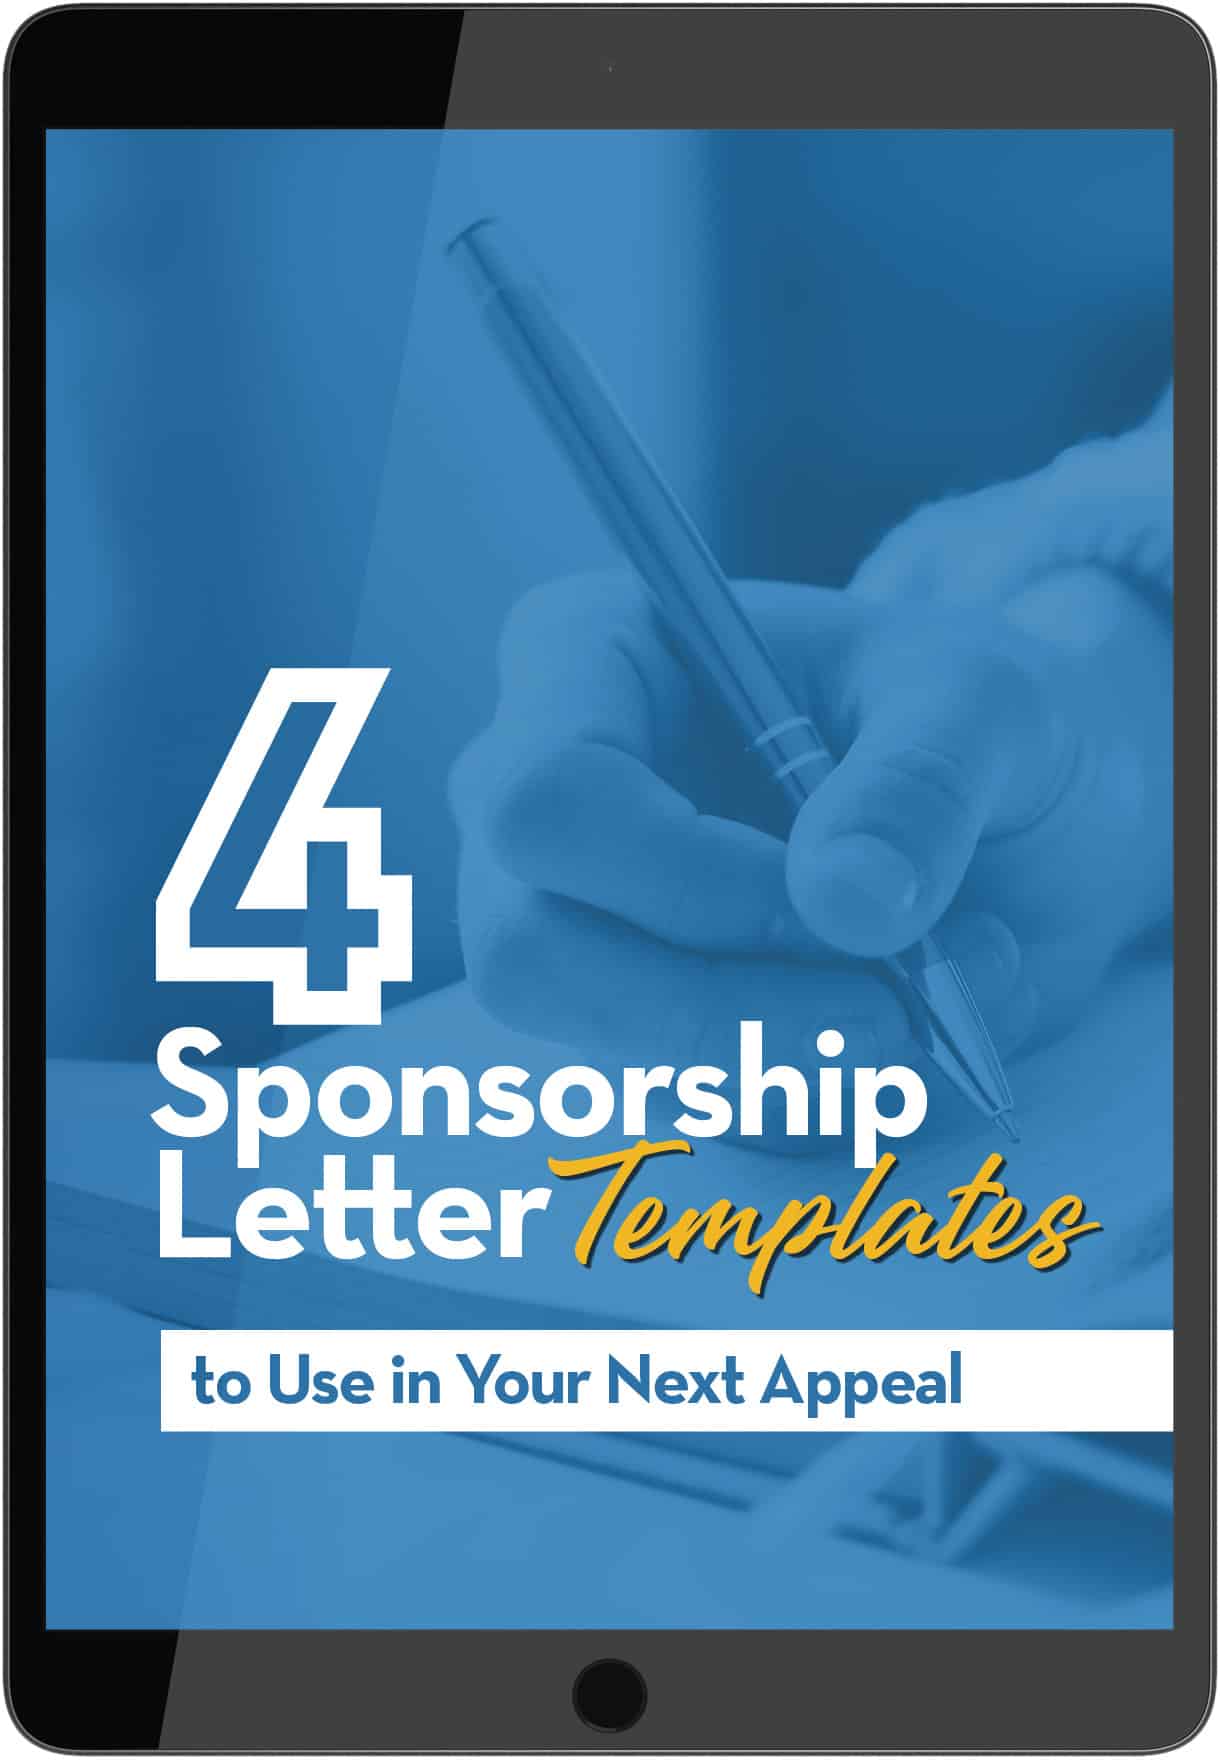 4 Sponsorship Letter Templates - ipad